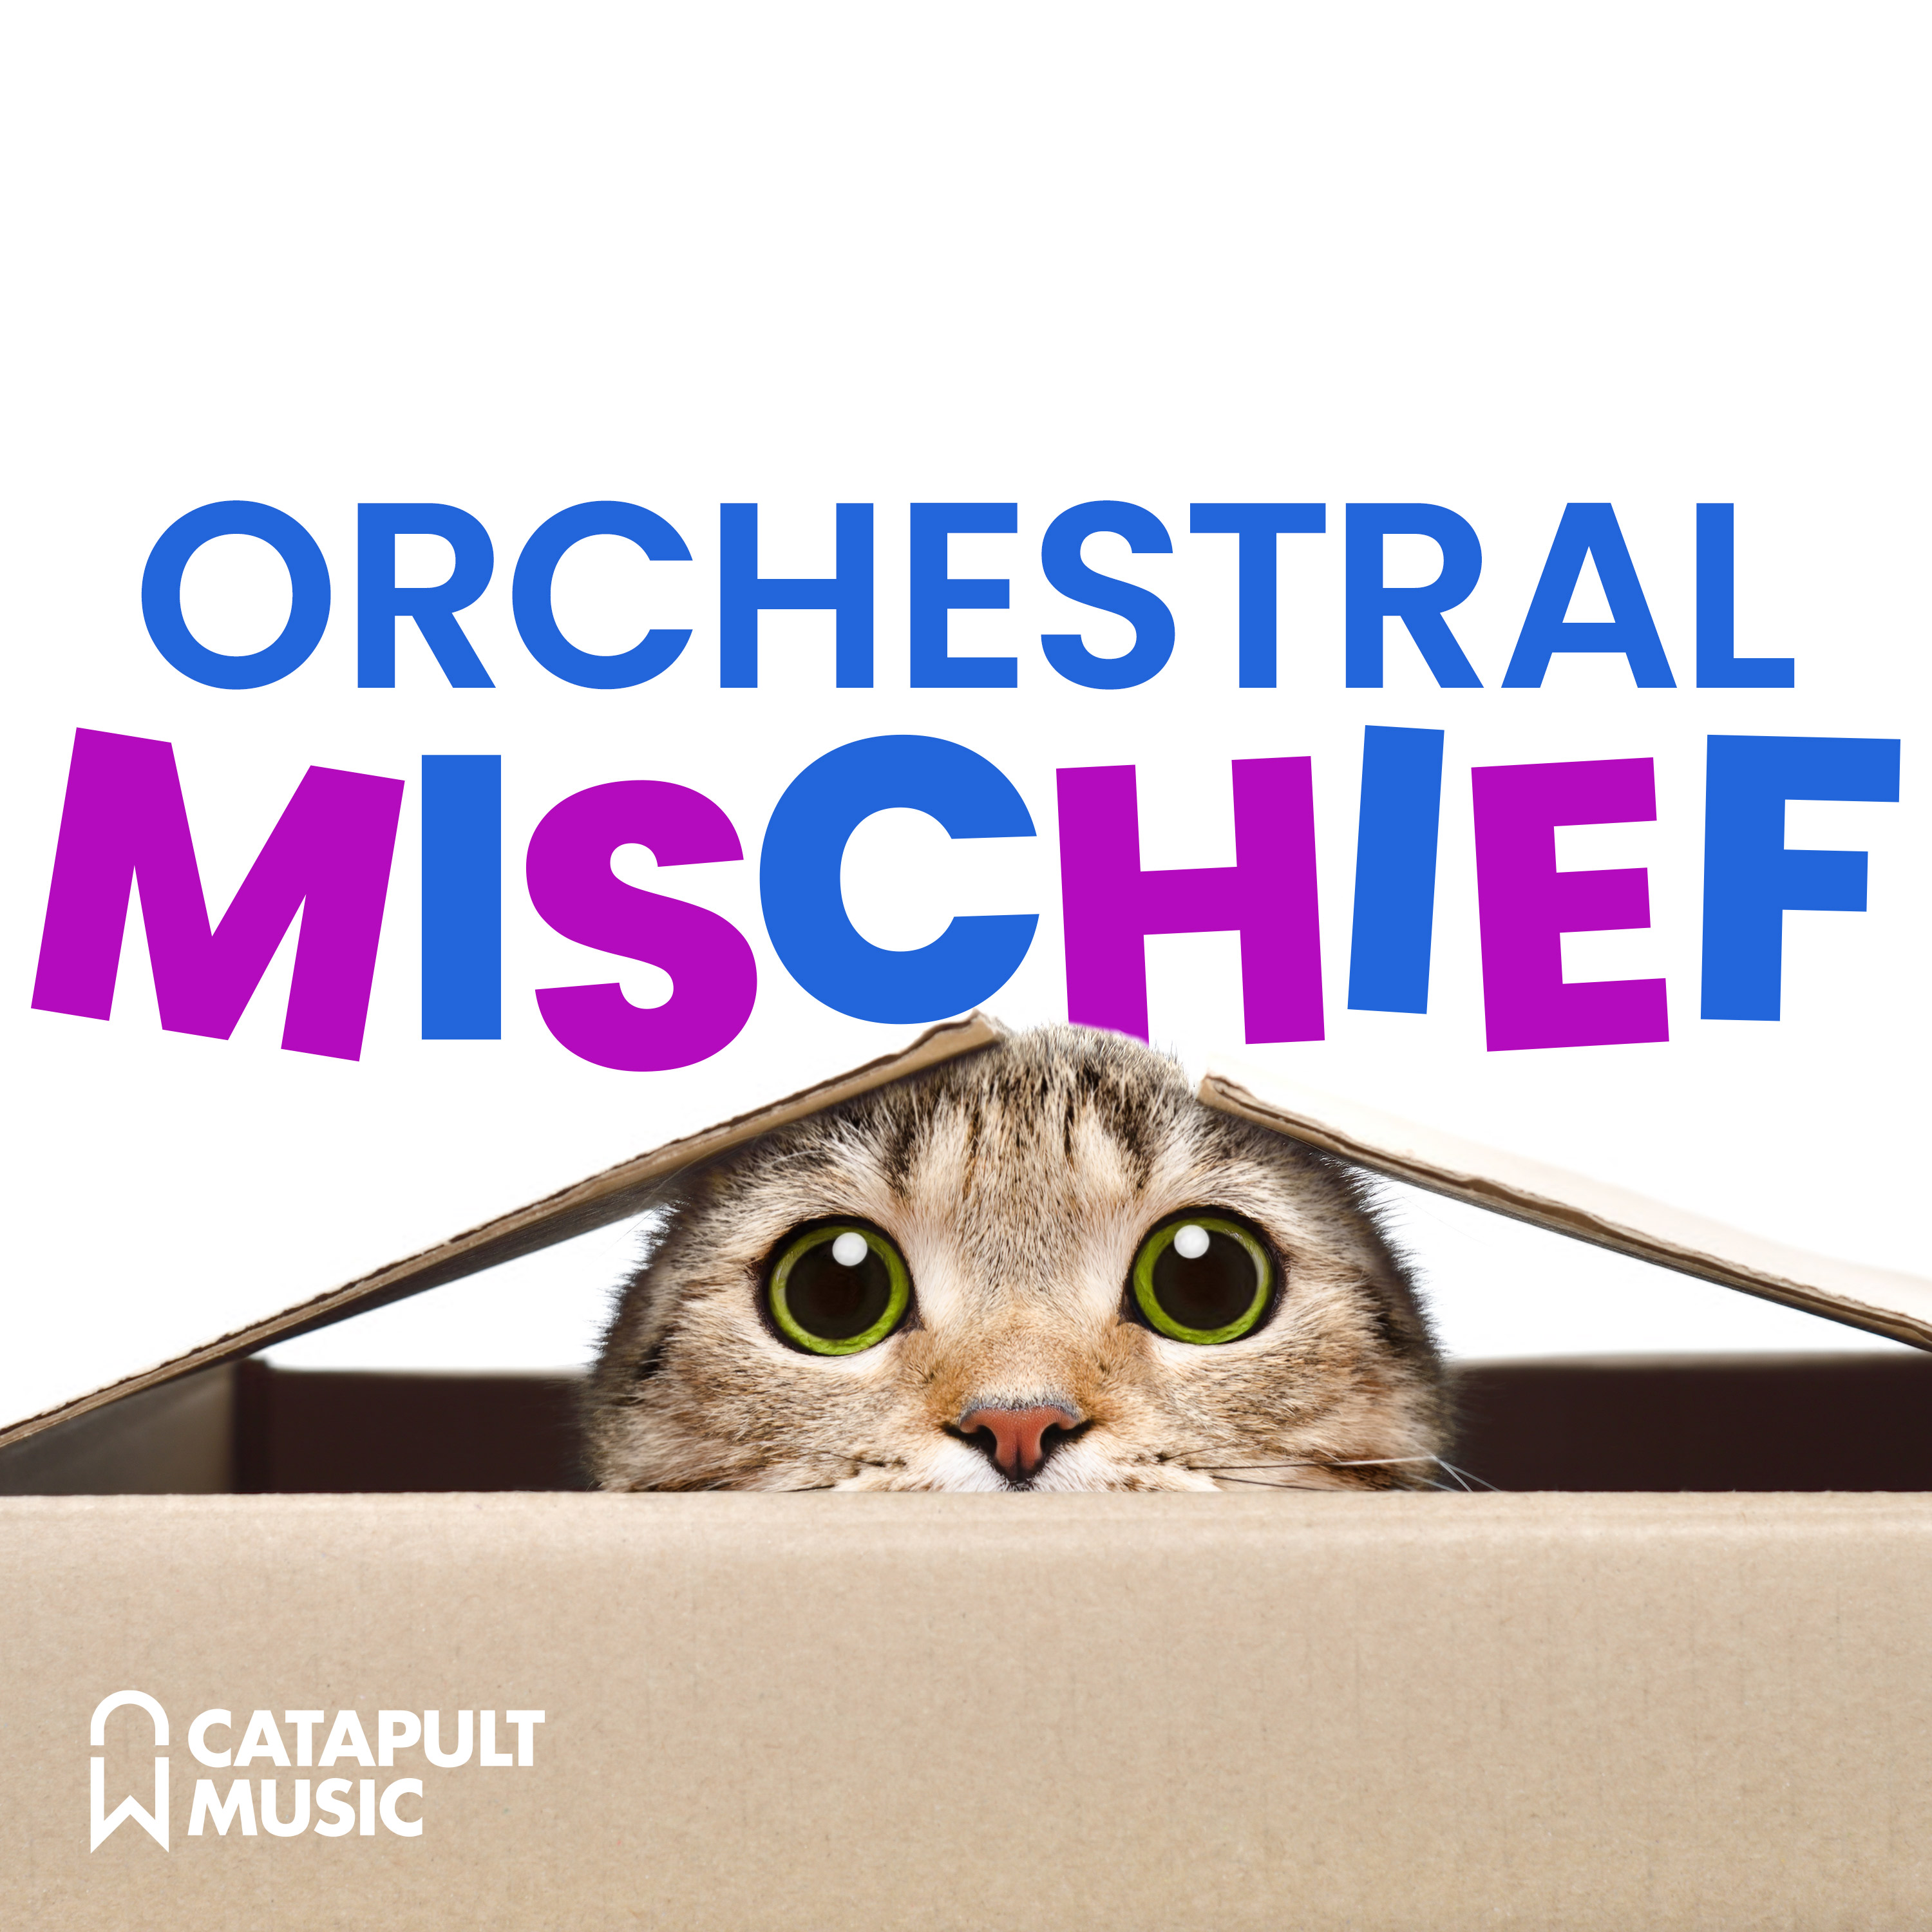 Orchestral Mischief